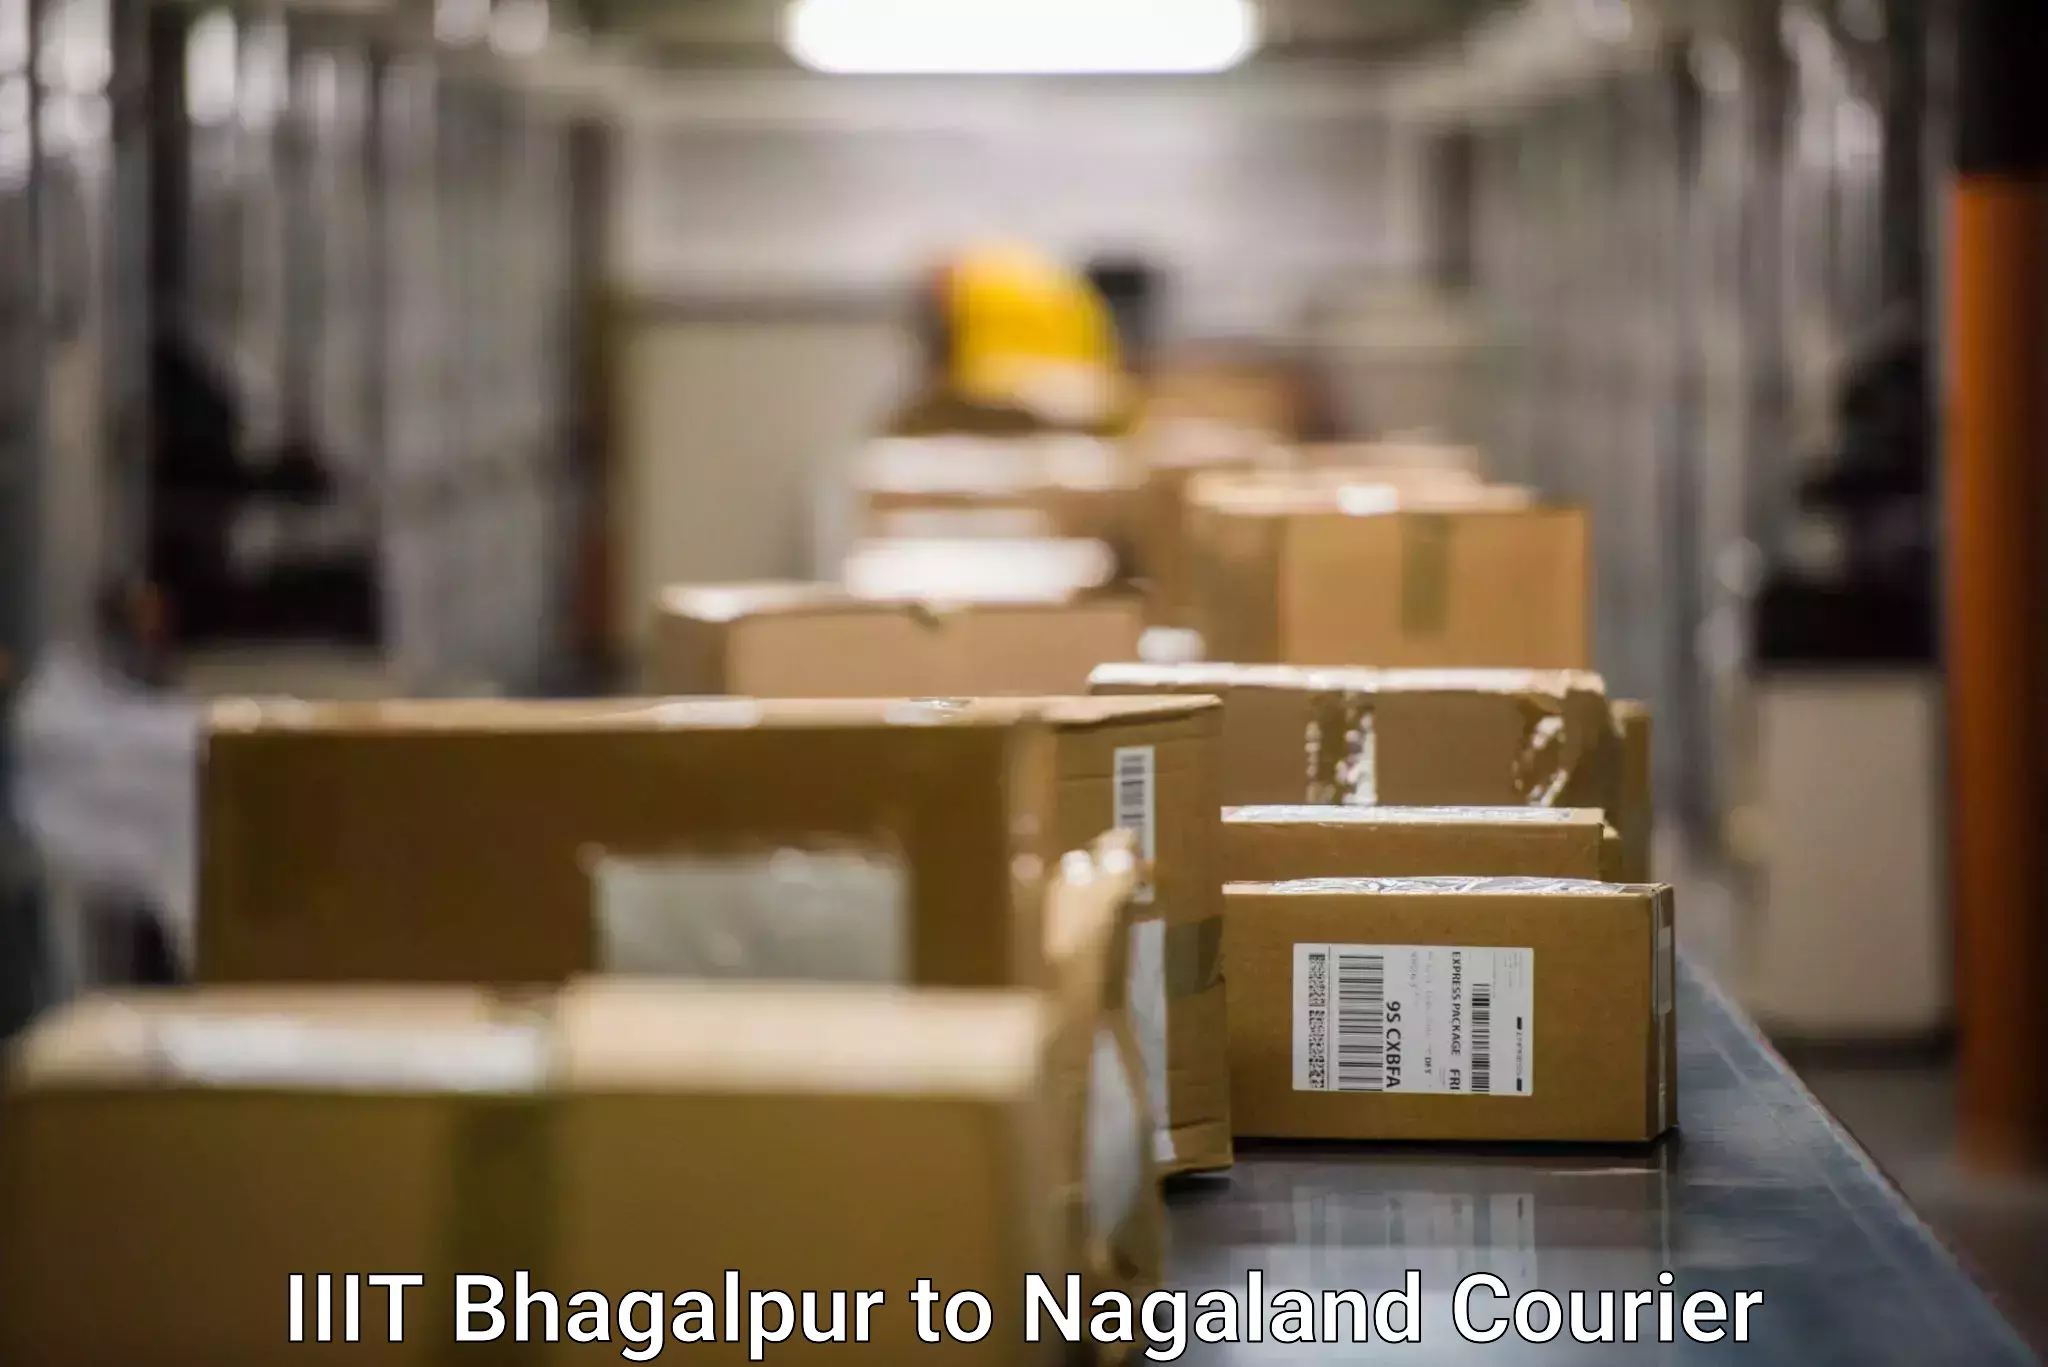 User-friendly delivery service IIIT Bhagalpur to Zunheboto